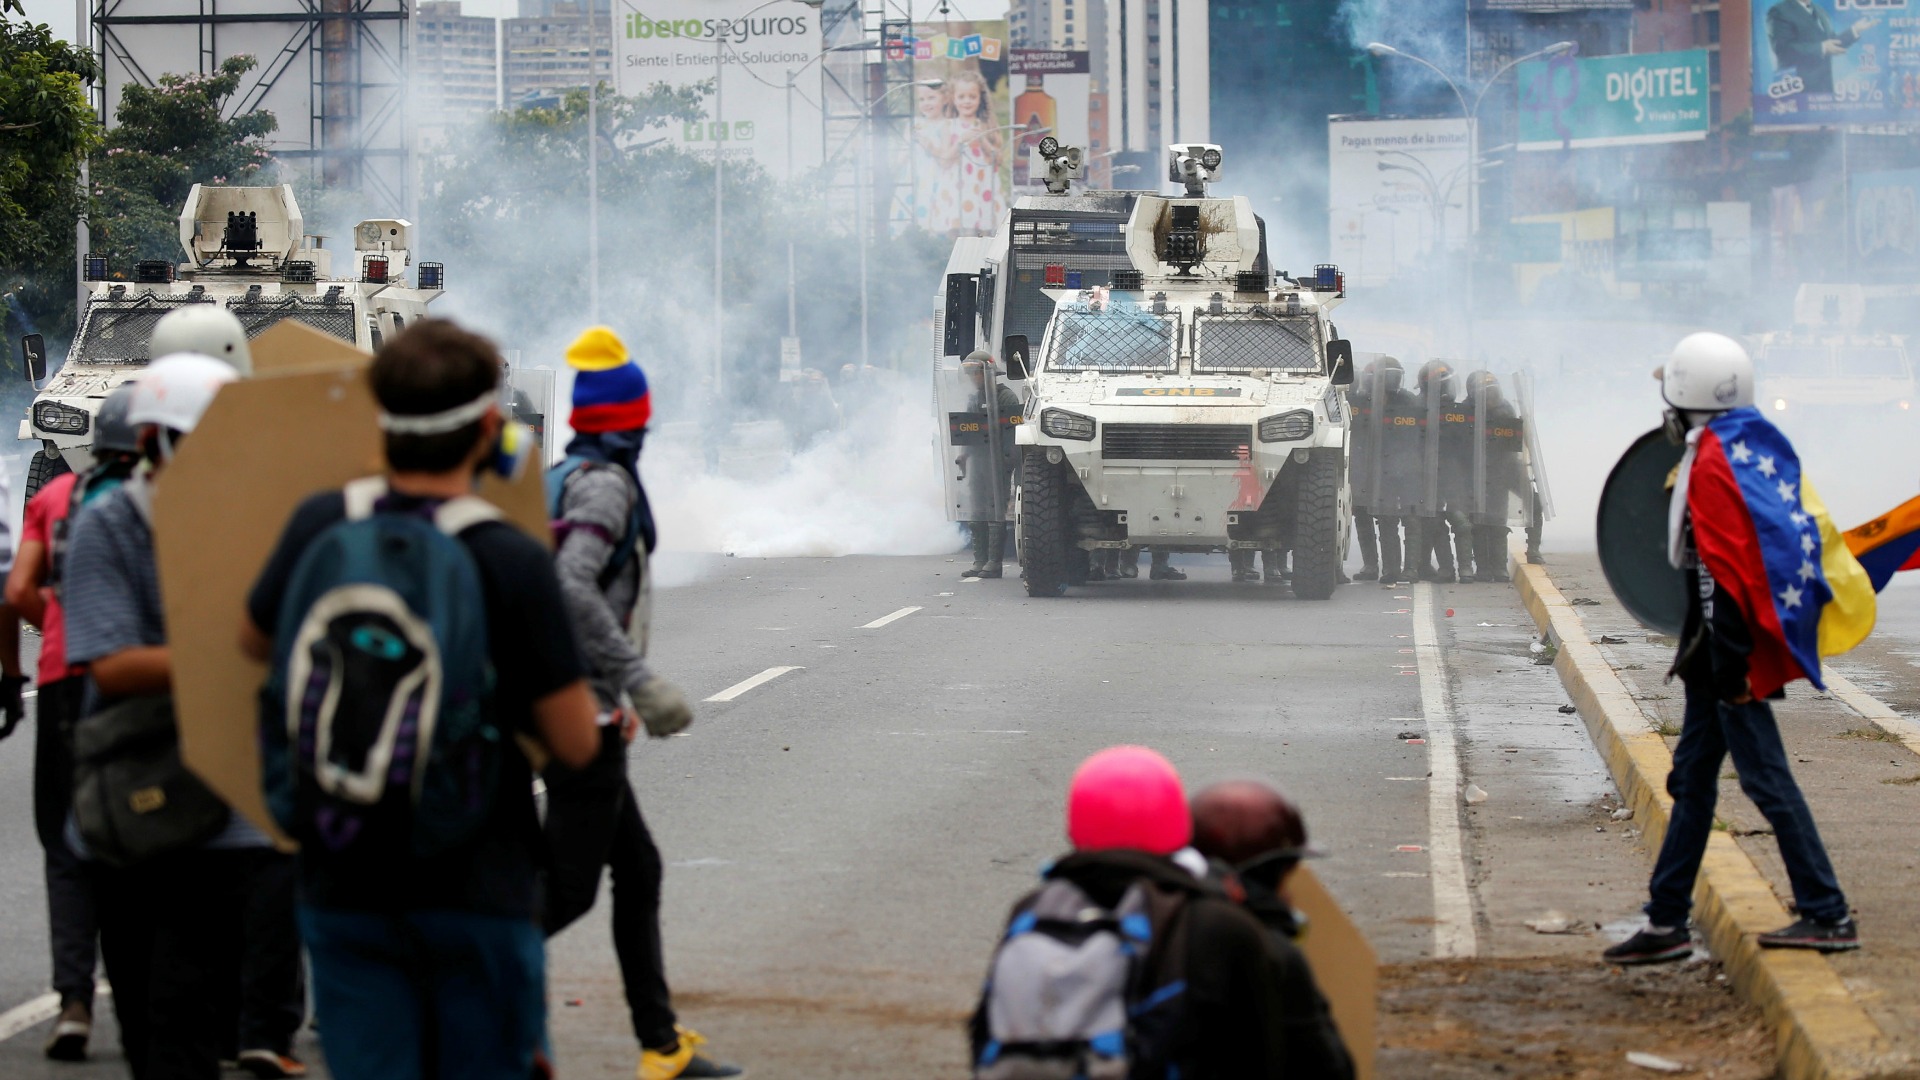 Ascienden a 35 los muertos en Venezuela desde el inicio de las protestas en abril